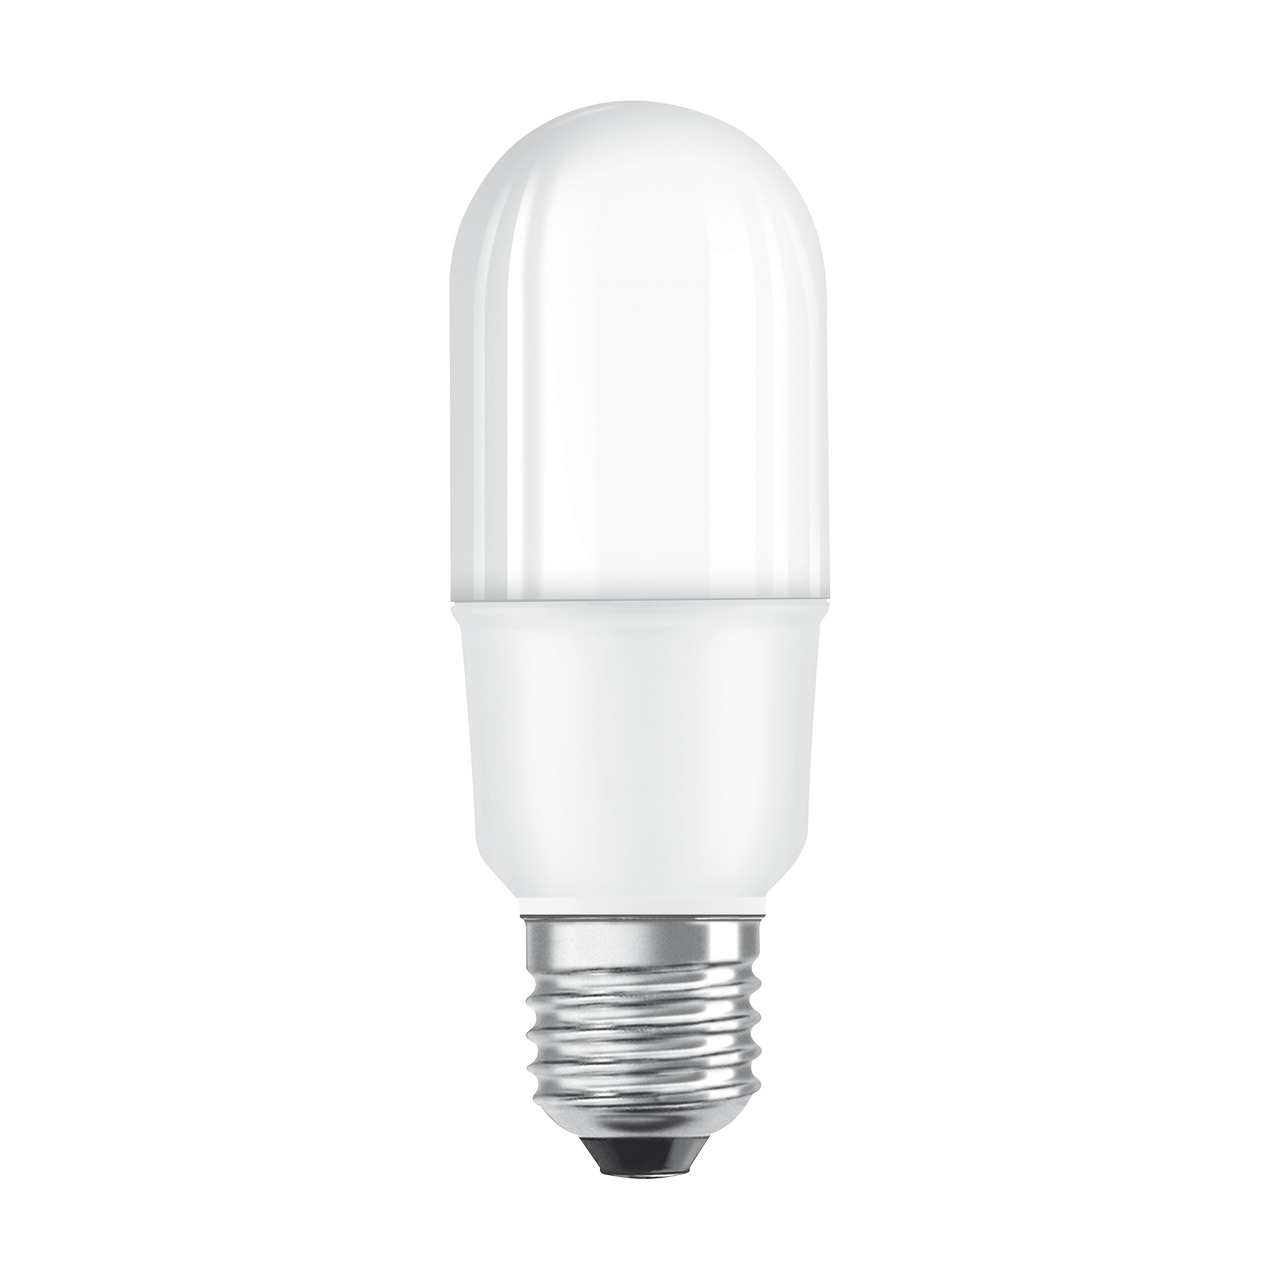 OSRAM LED STAR 9-W-LED-Lampe E27- warmweiss- schlanke Ausführung- Ersatz für 75-W-Glühlampen